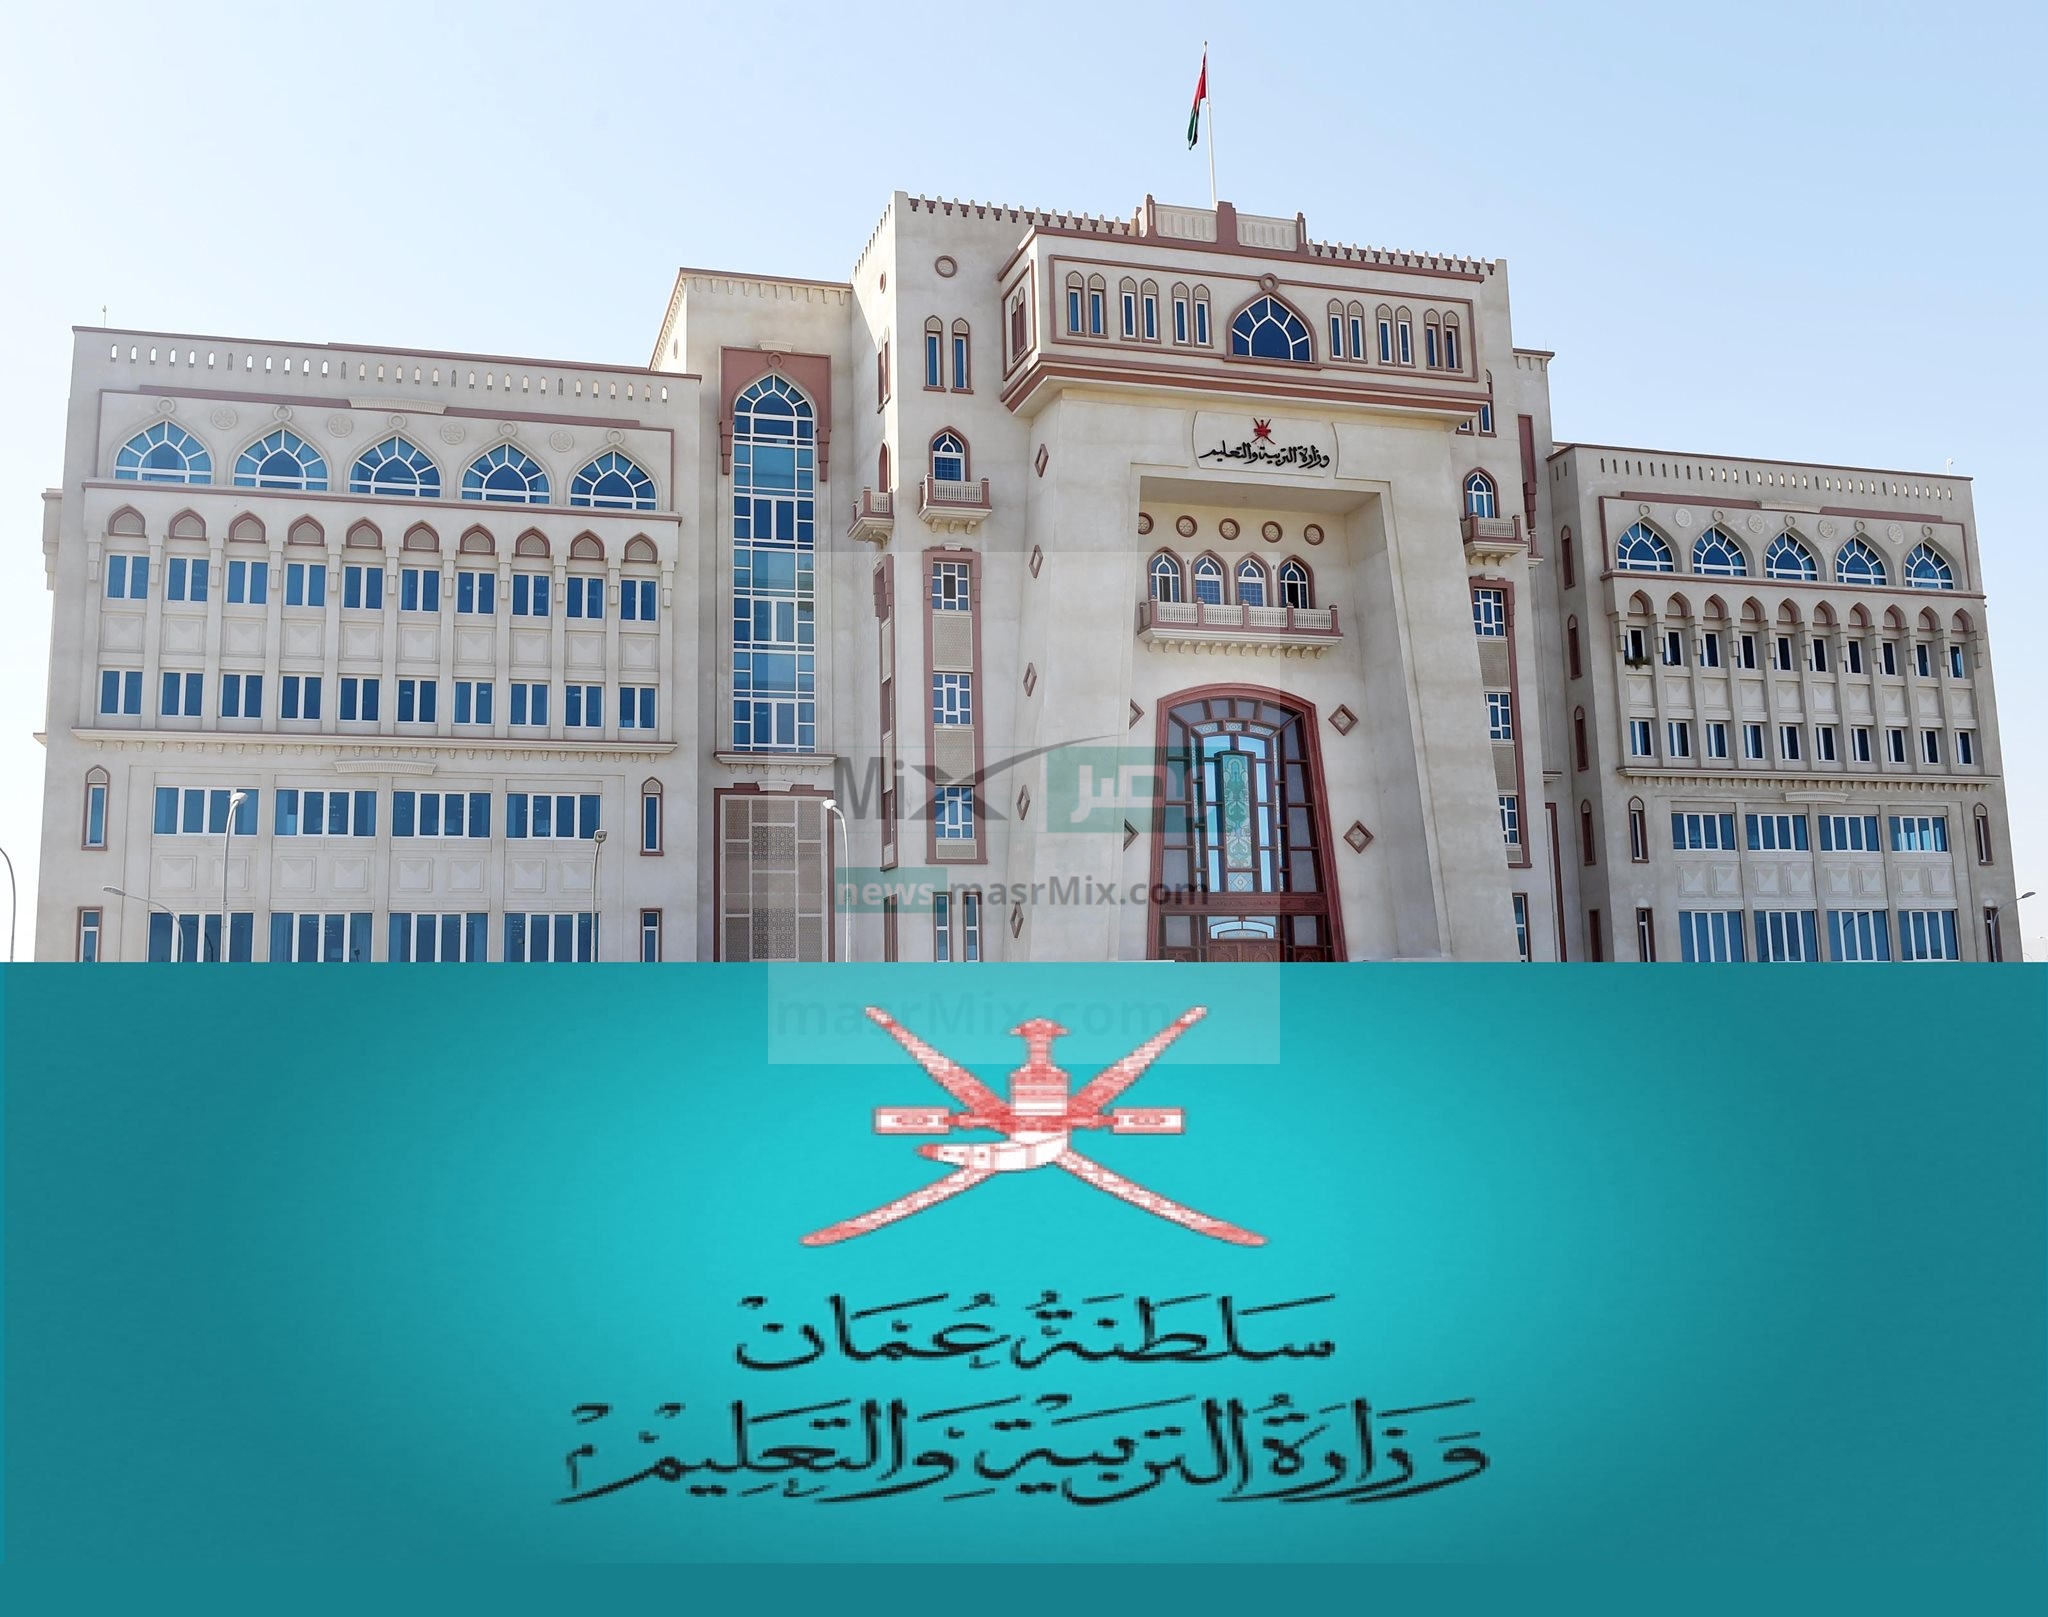 الدبلوم العام - مدونة التقنية العربية